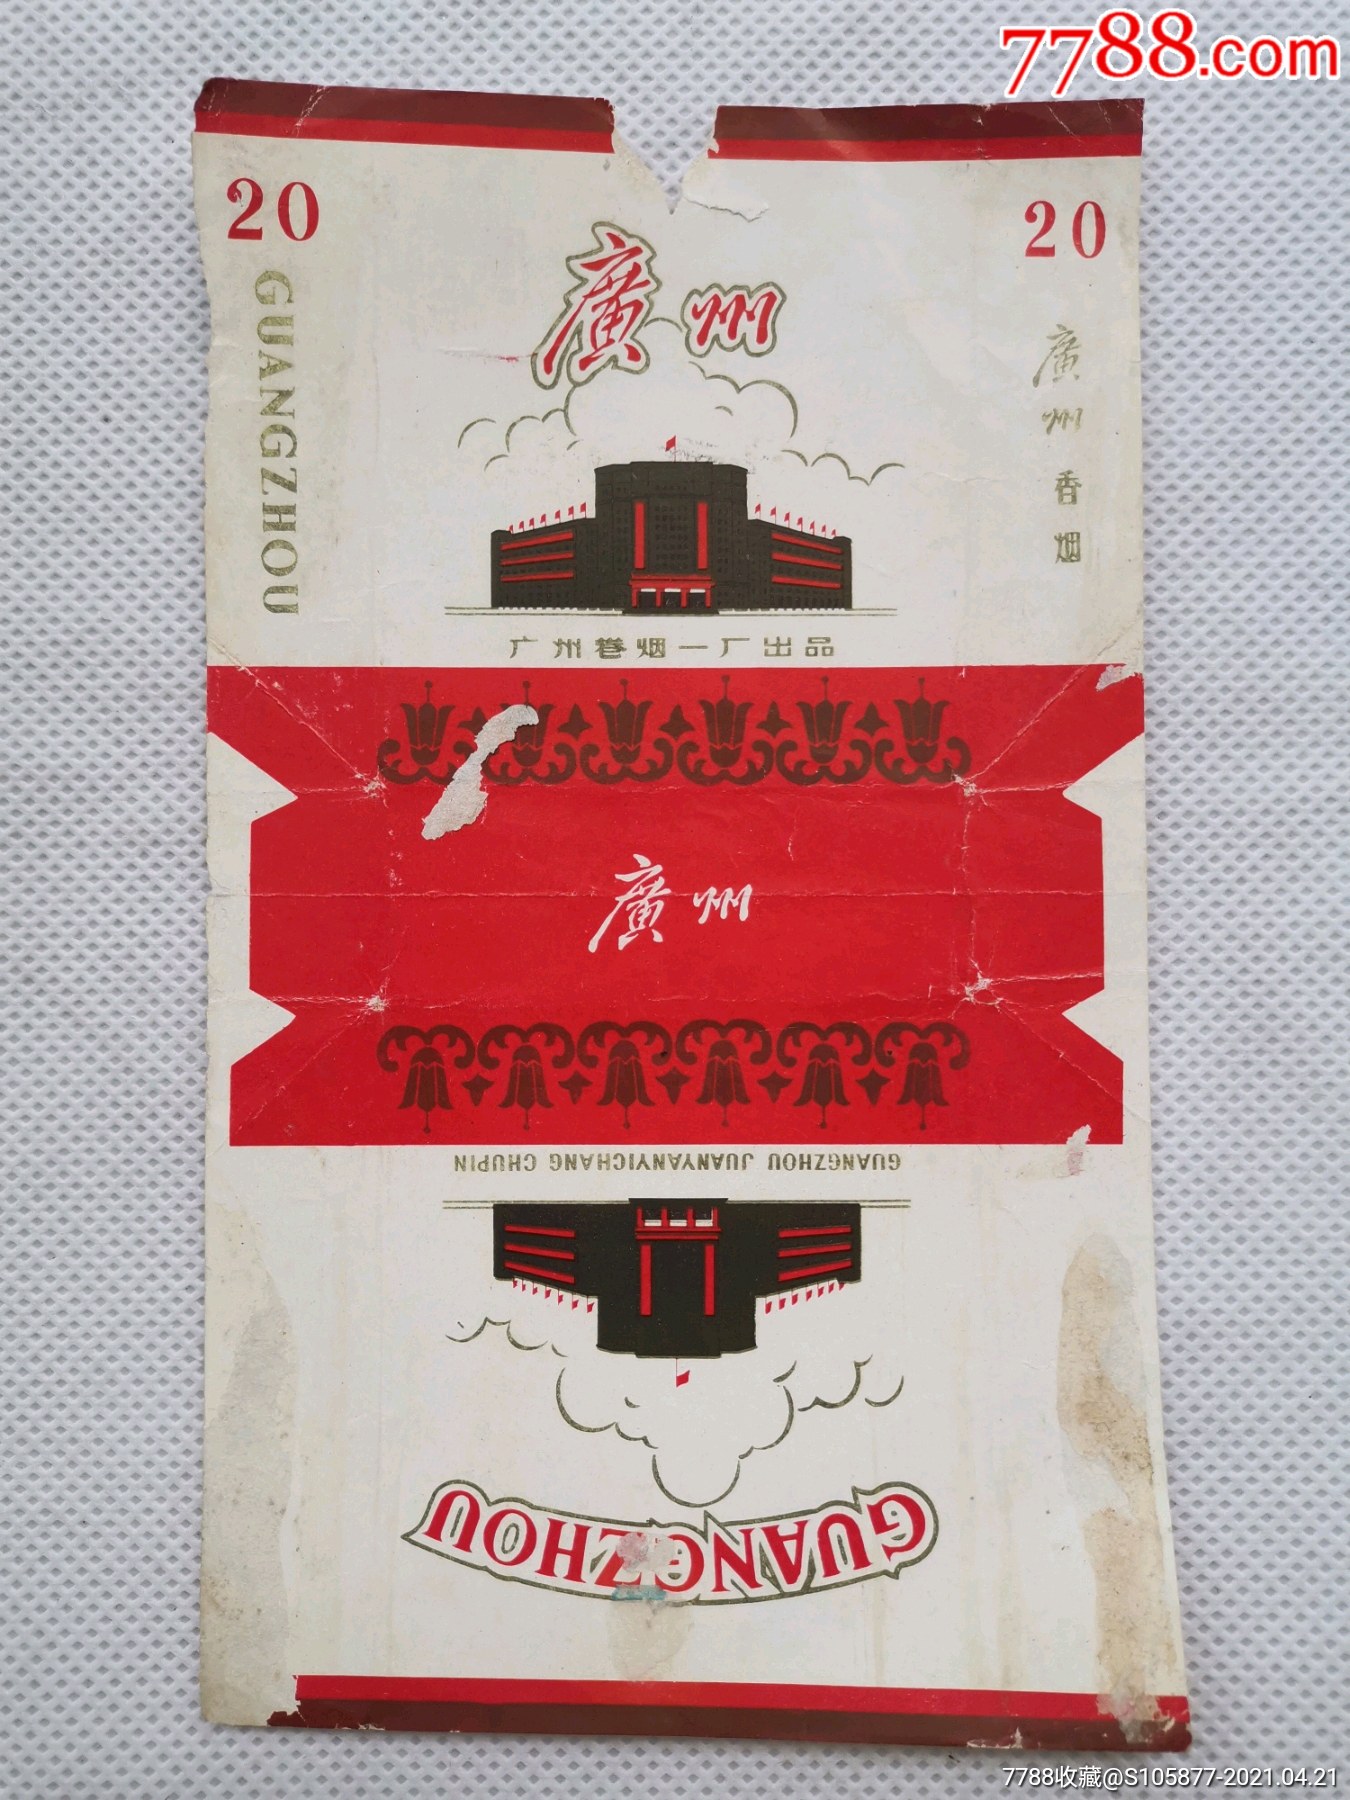 广州卷烟一厂出品的广州香烟烟标一张